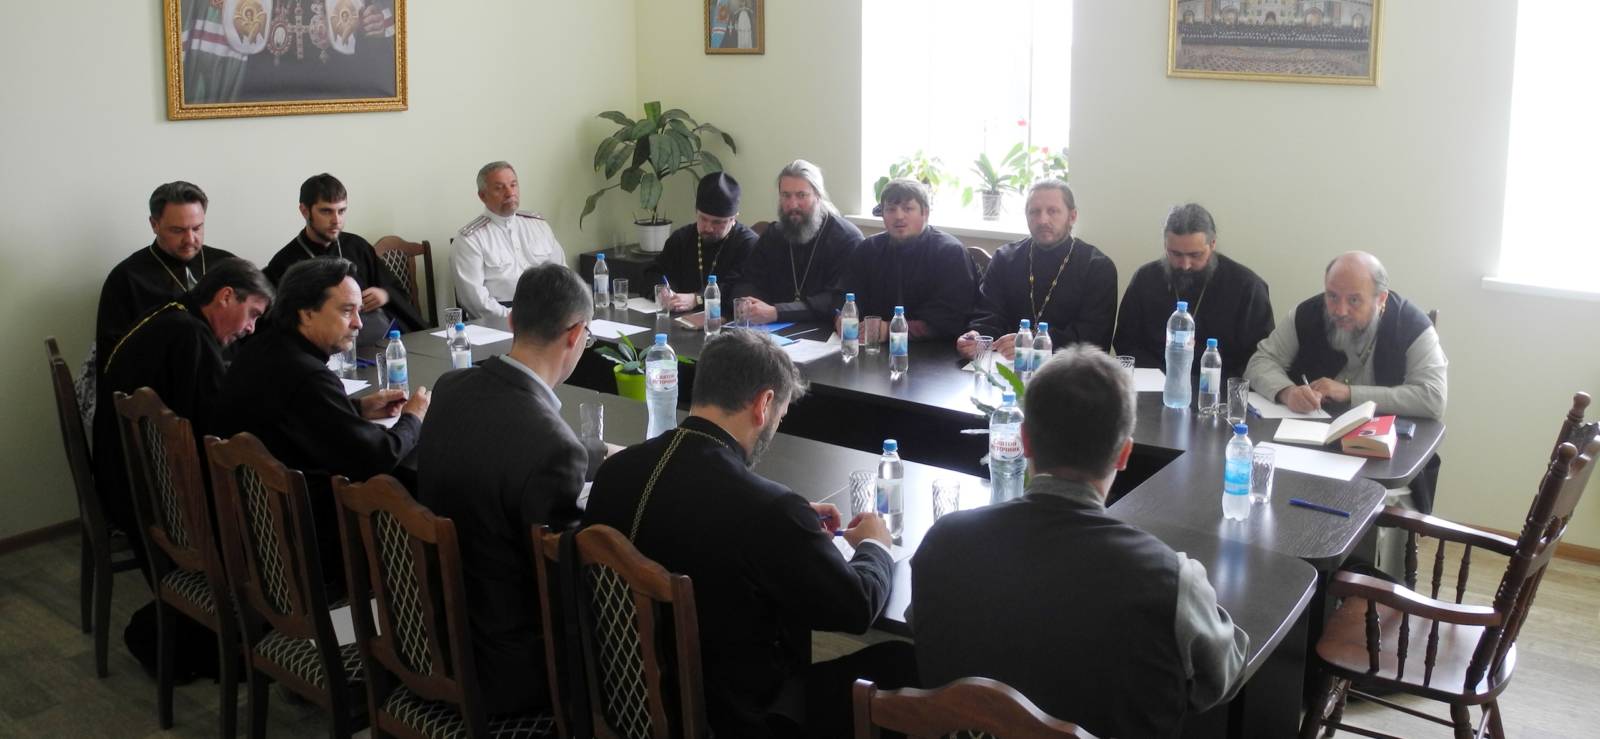 Расширенное заседание епархиального совета Урюпинской епархии.